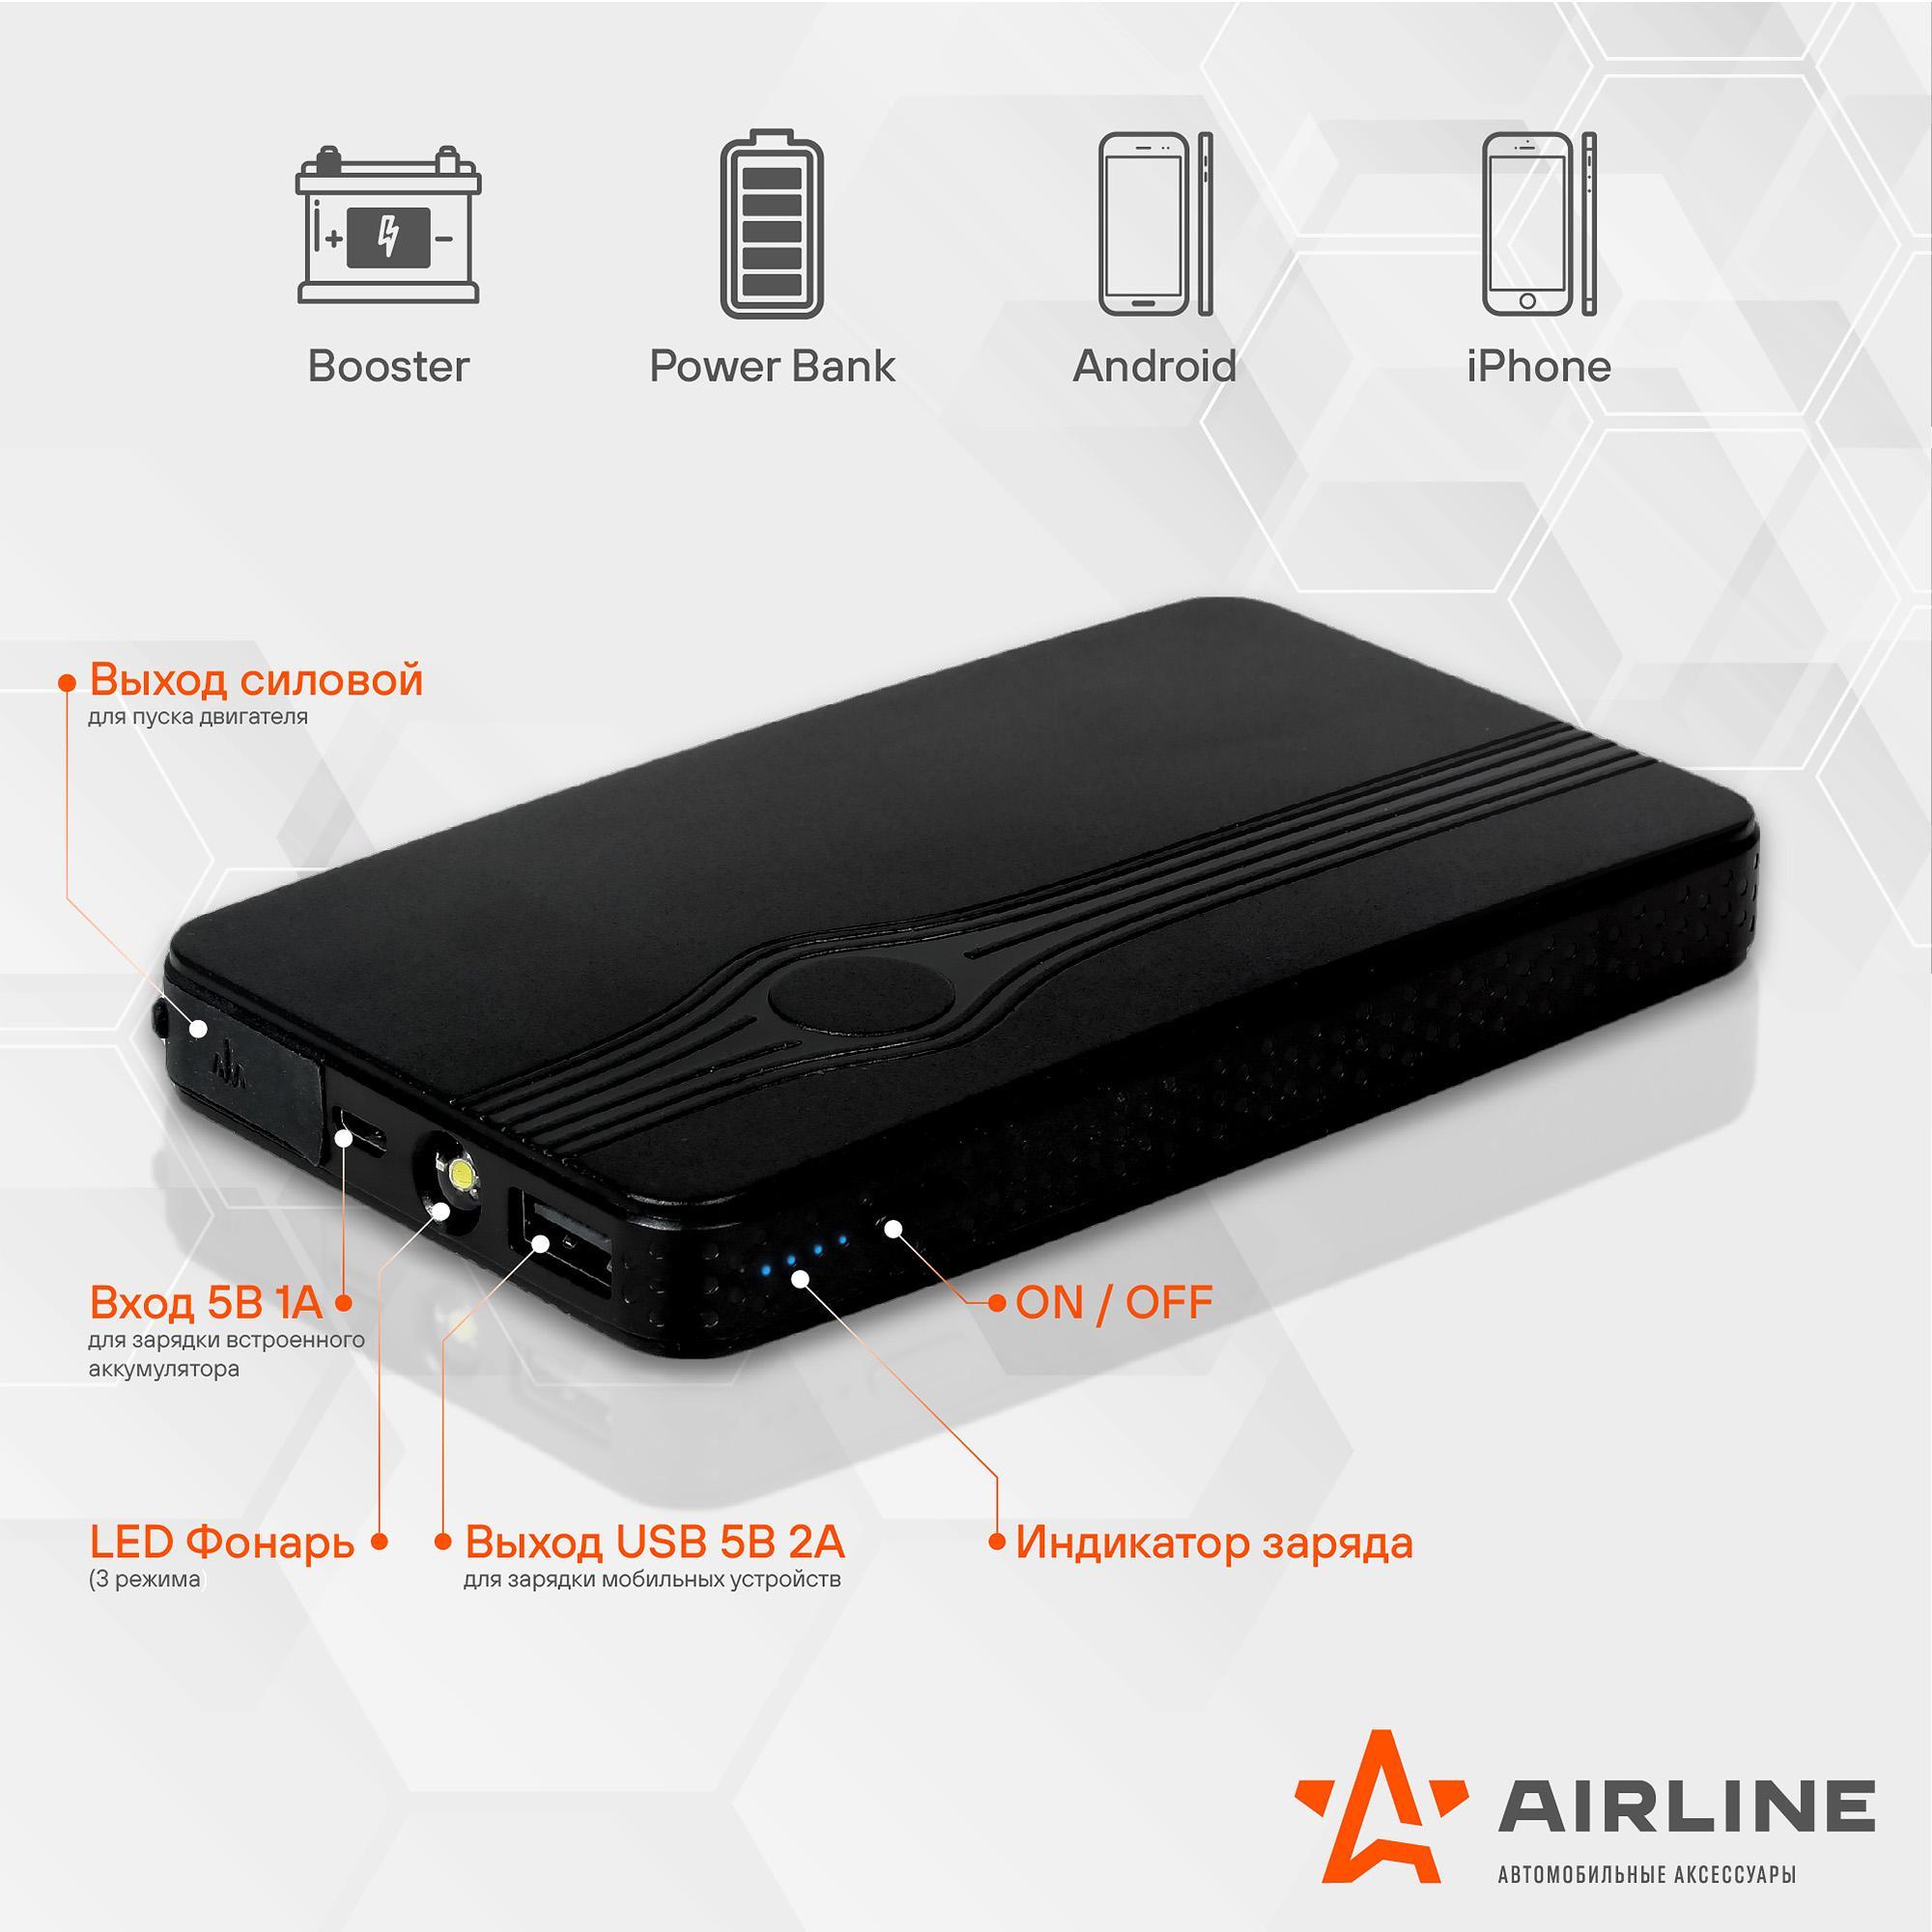 AIRLINE Аккумулятор внешний универсальный (Booster) 8000мАч: USB 5V/2A, фонарь, пуск ДВС 3